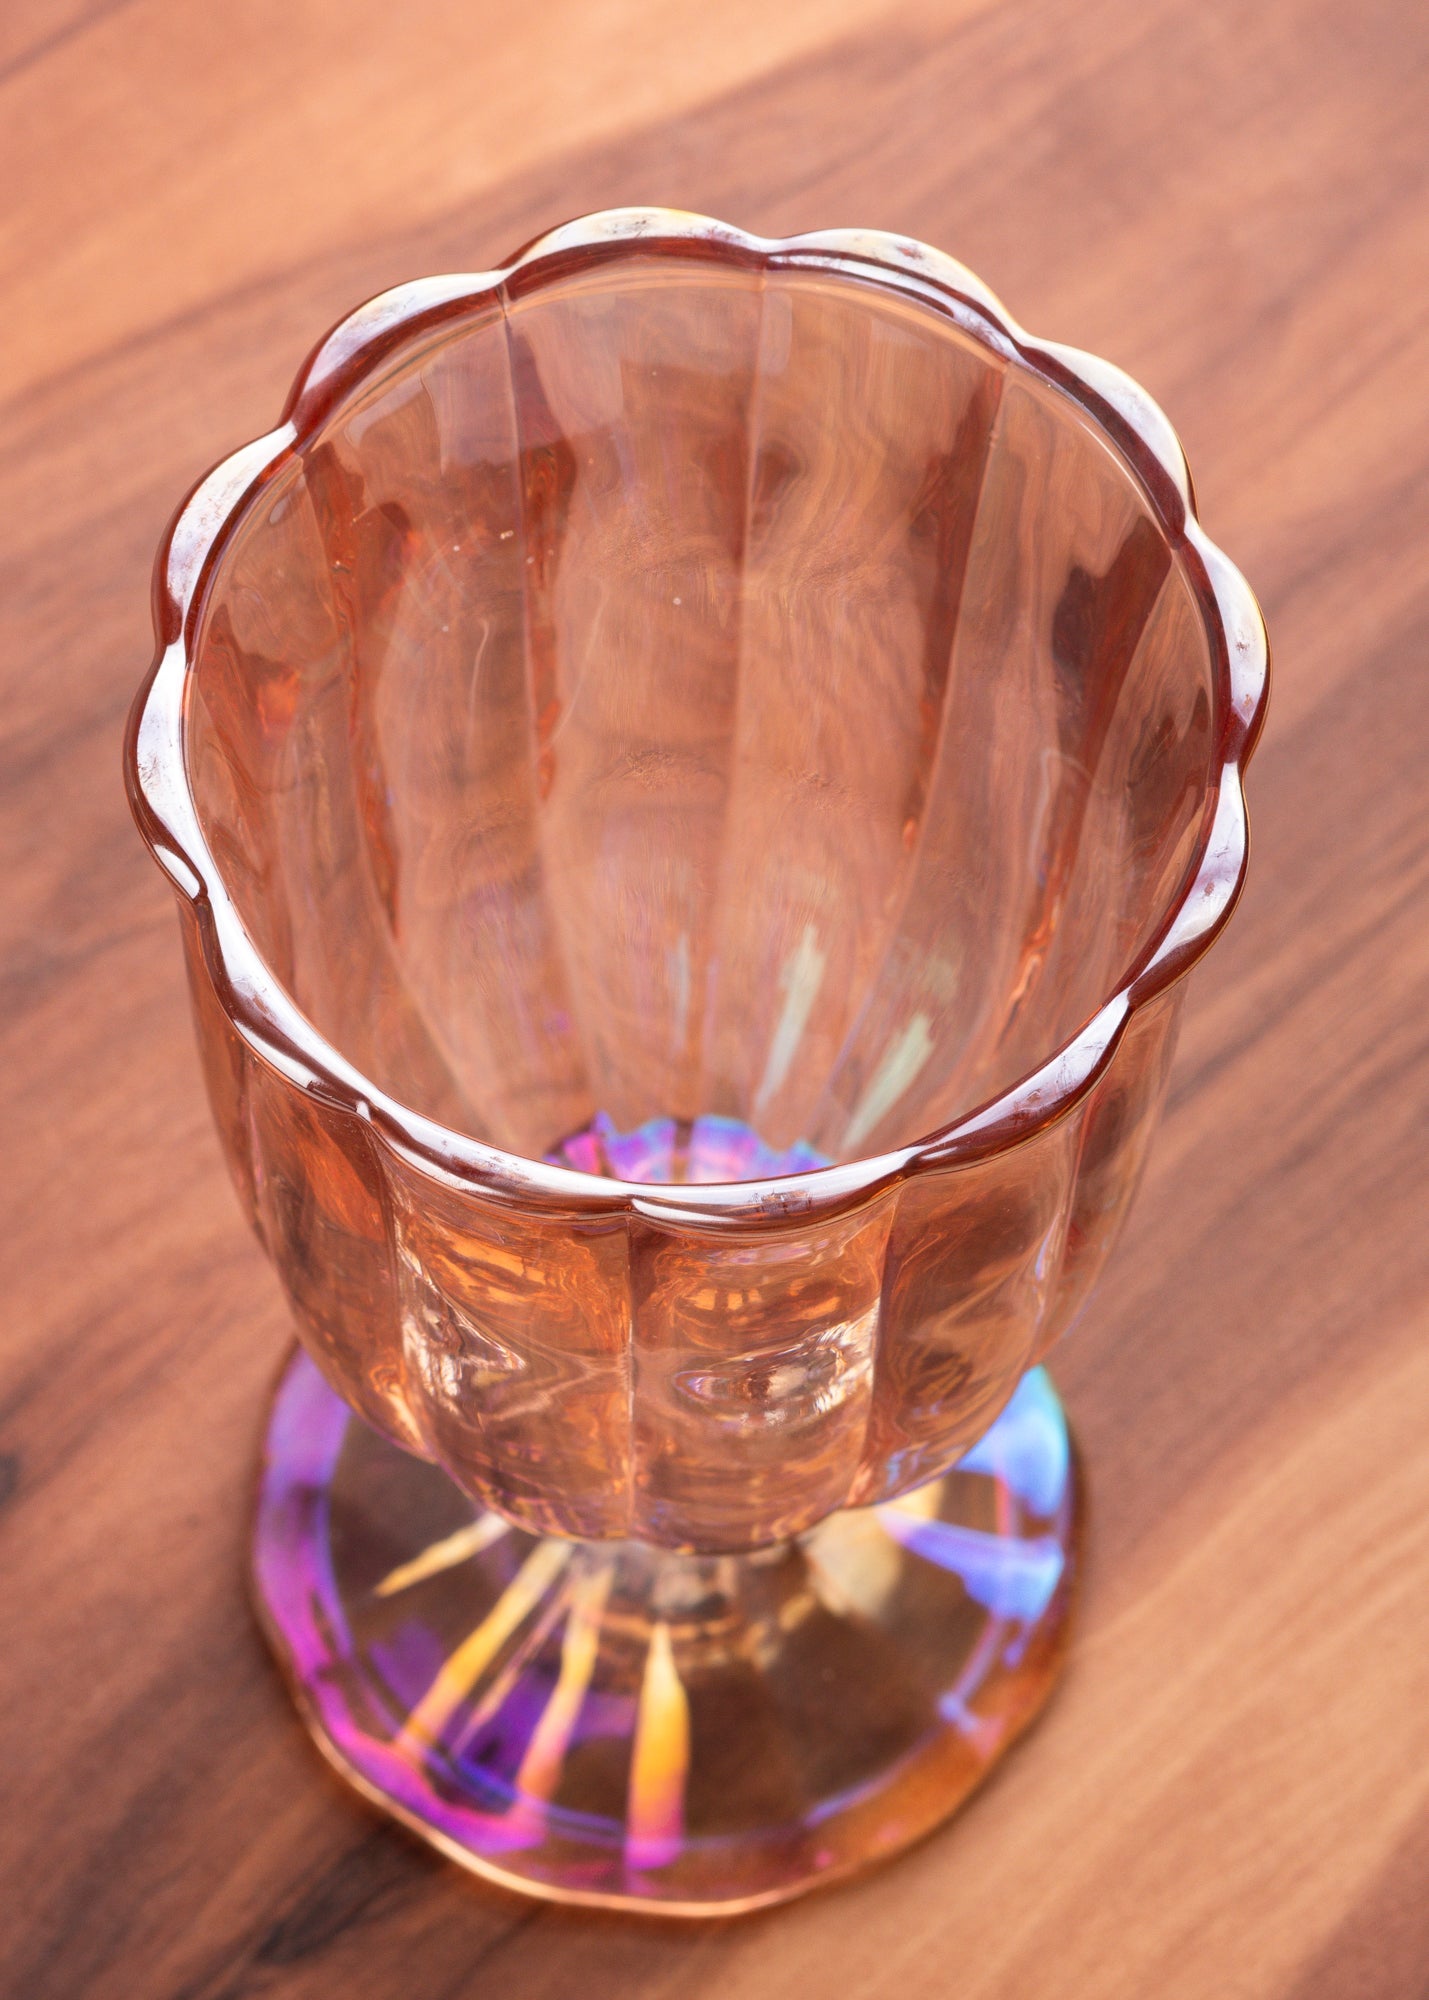 precio copa vidrio rosa mahahome